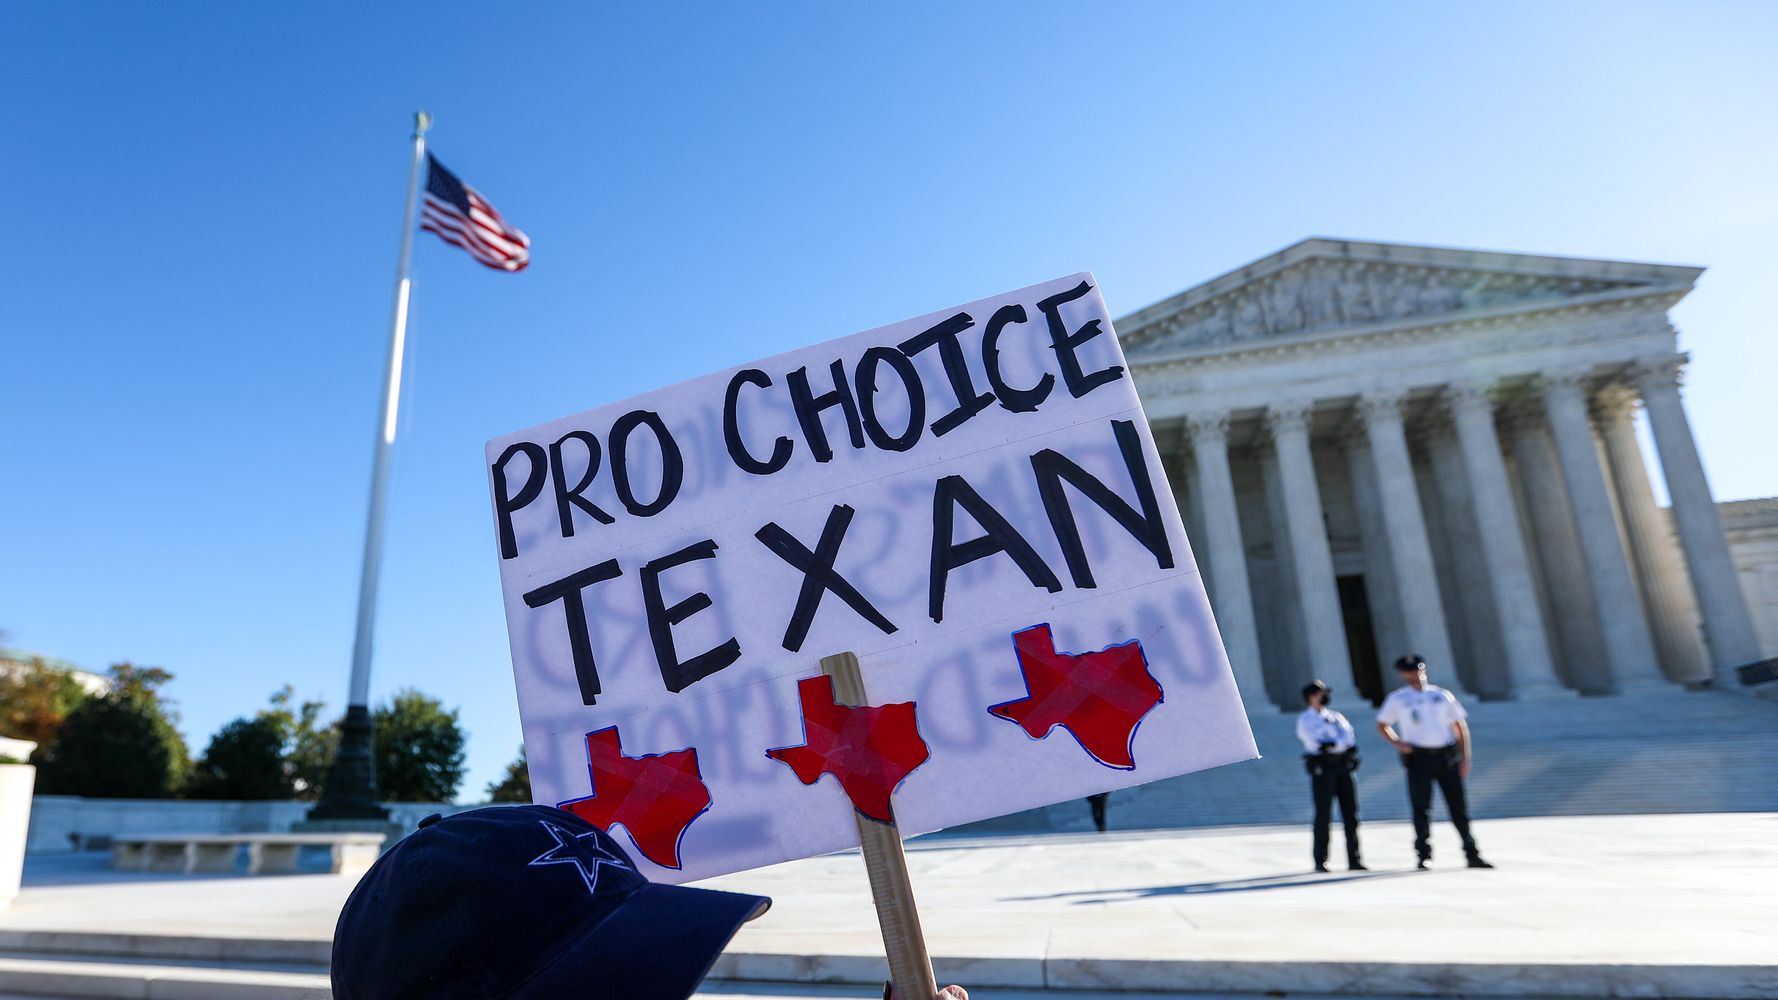 La mayoría de los estadounidenses quieren que la Corte Suprema rechace la ley de aborto extremo de Texas